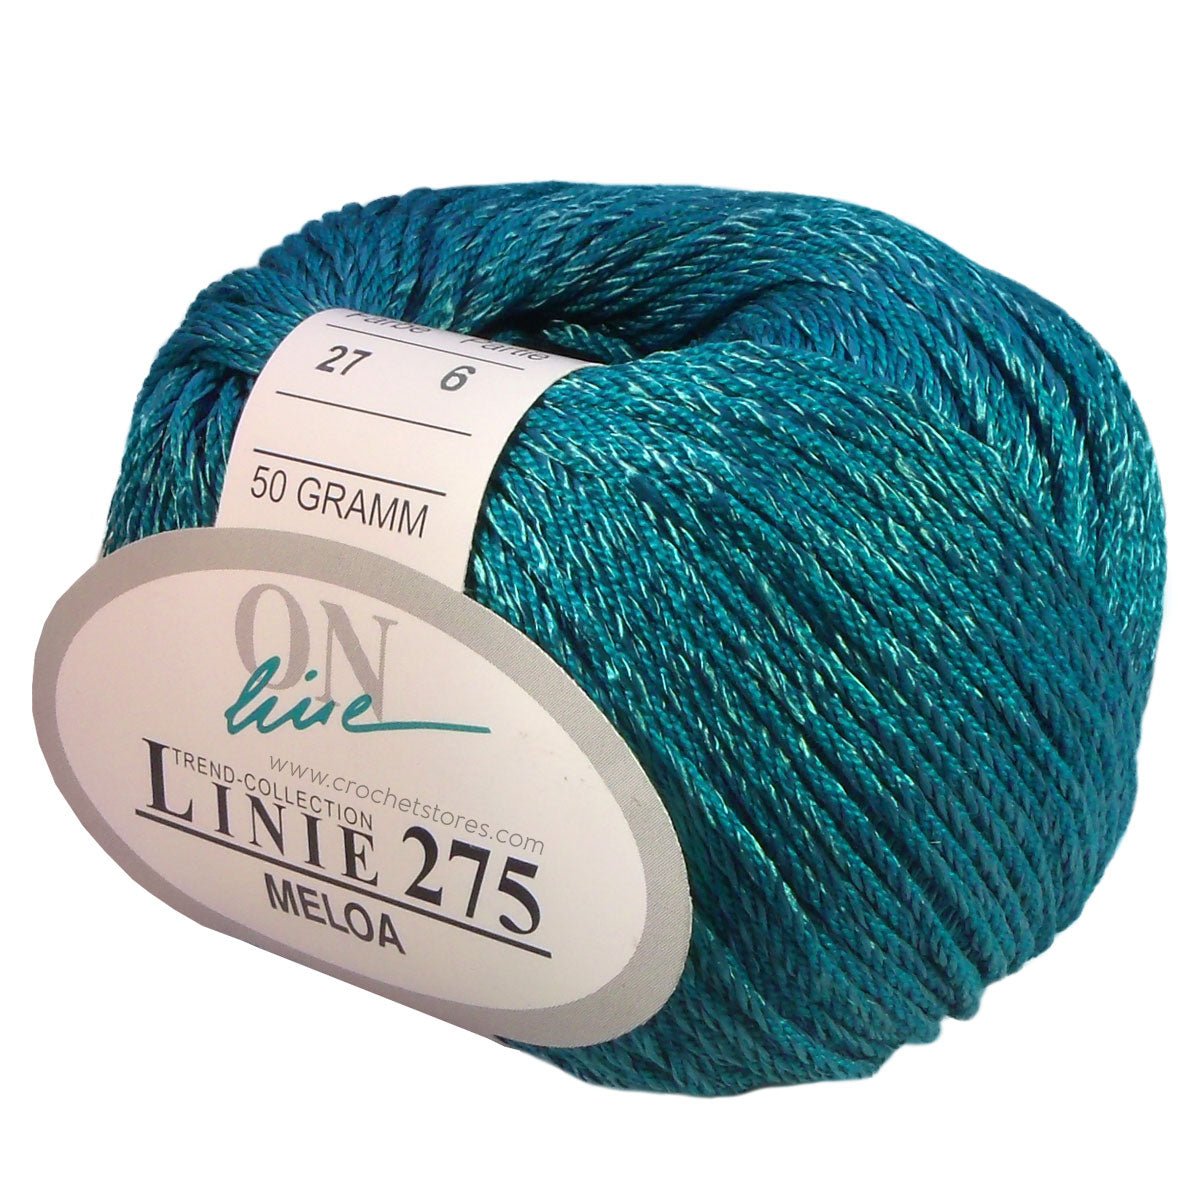 MELOA - Crochetstores110275-0027